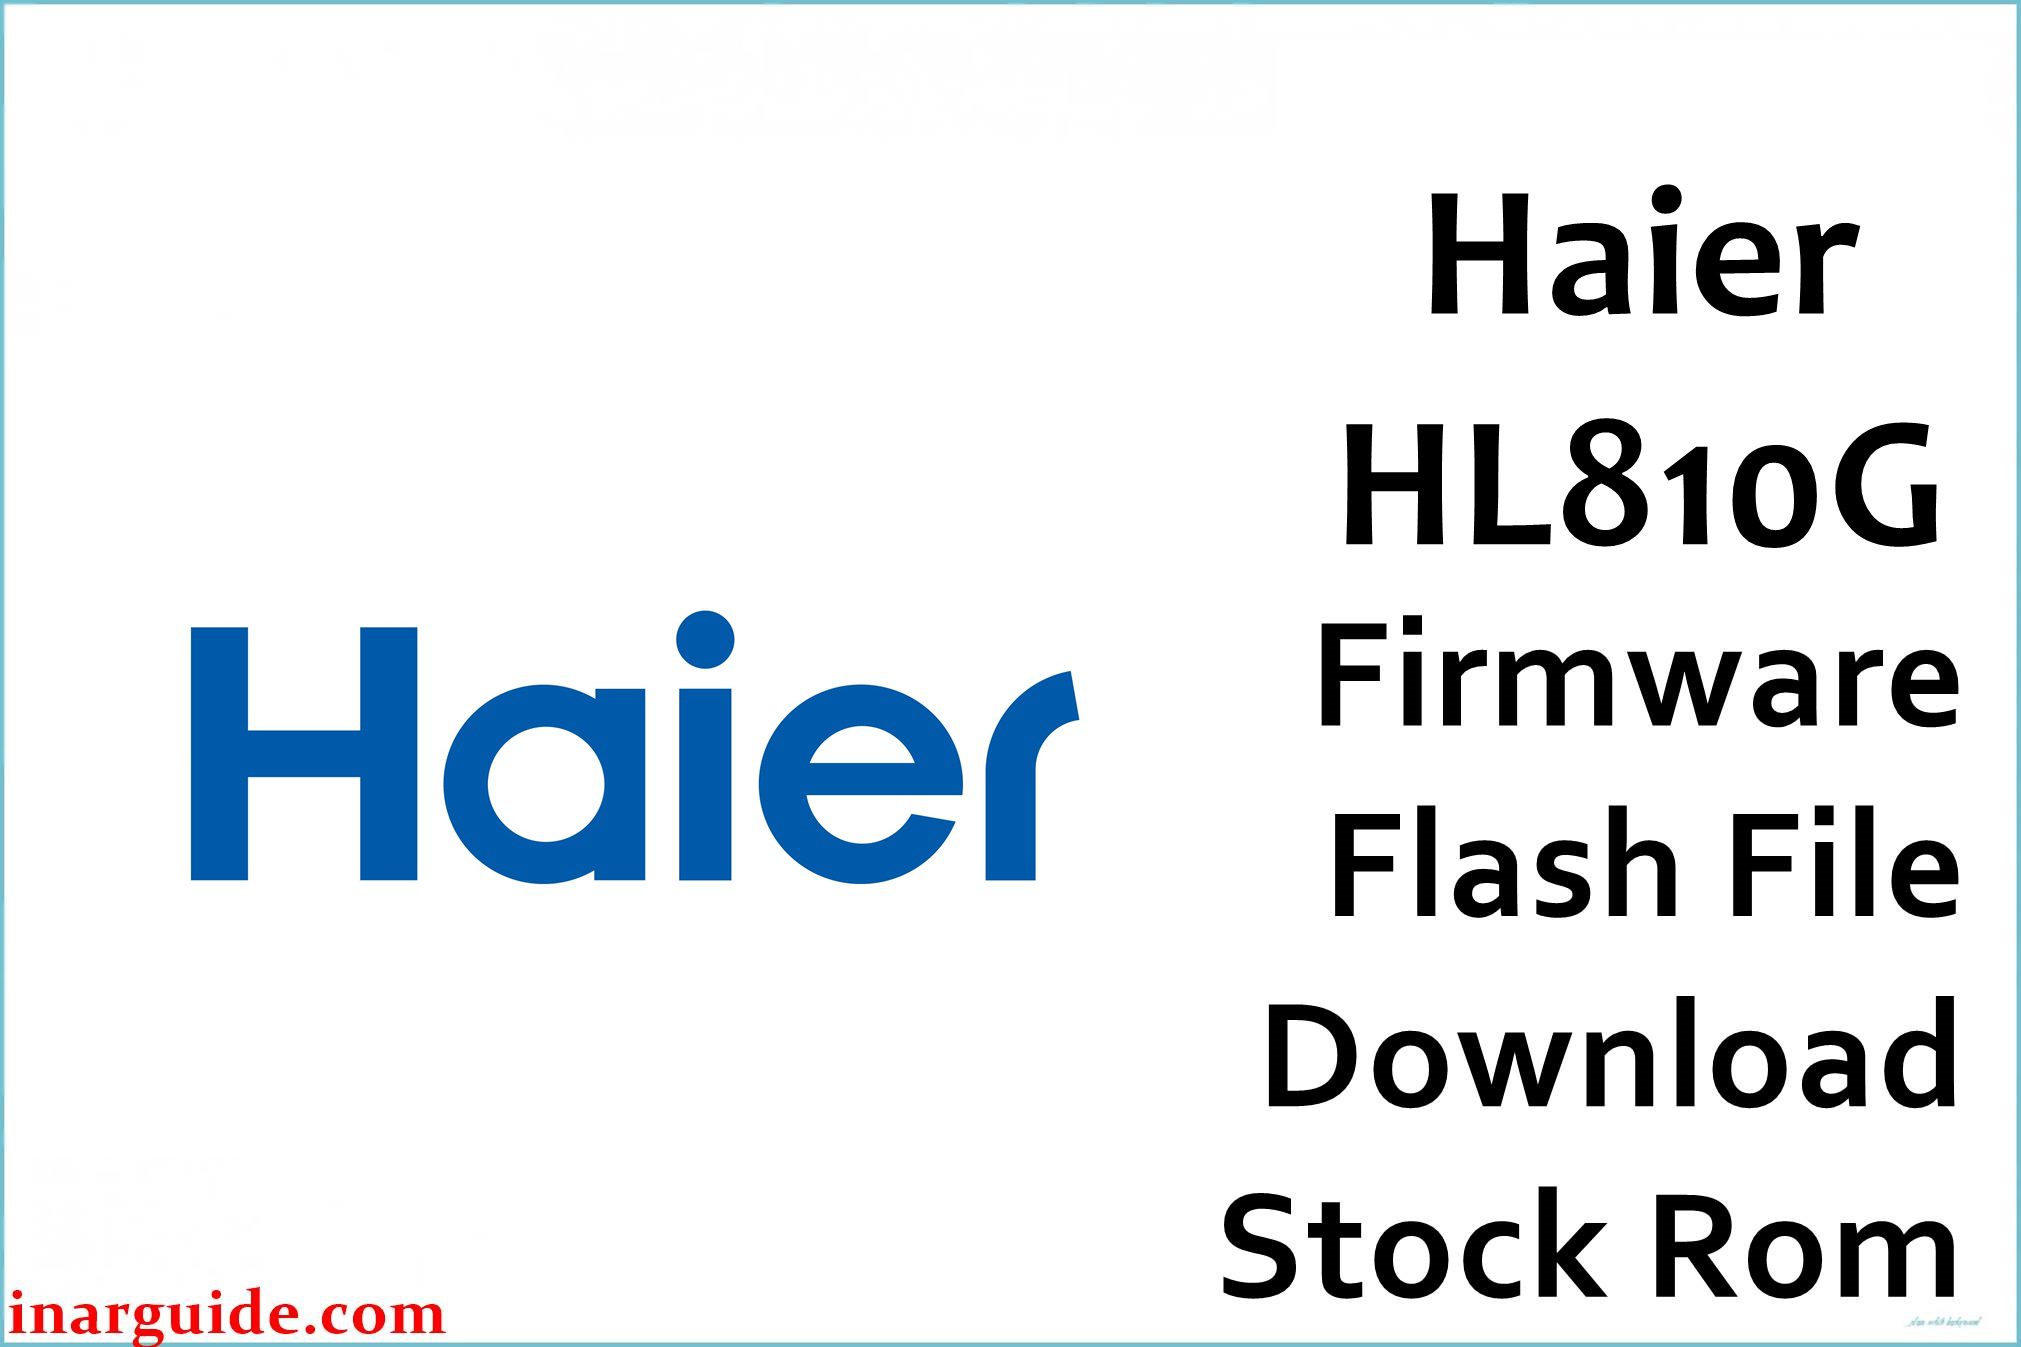 Haier HL810G